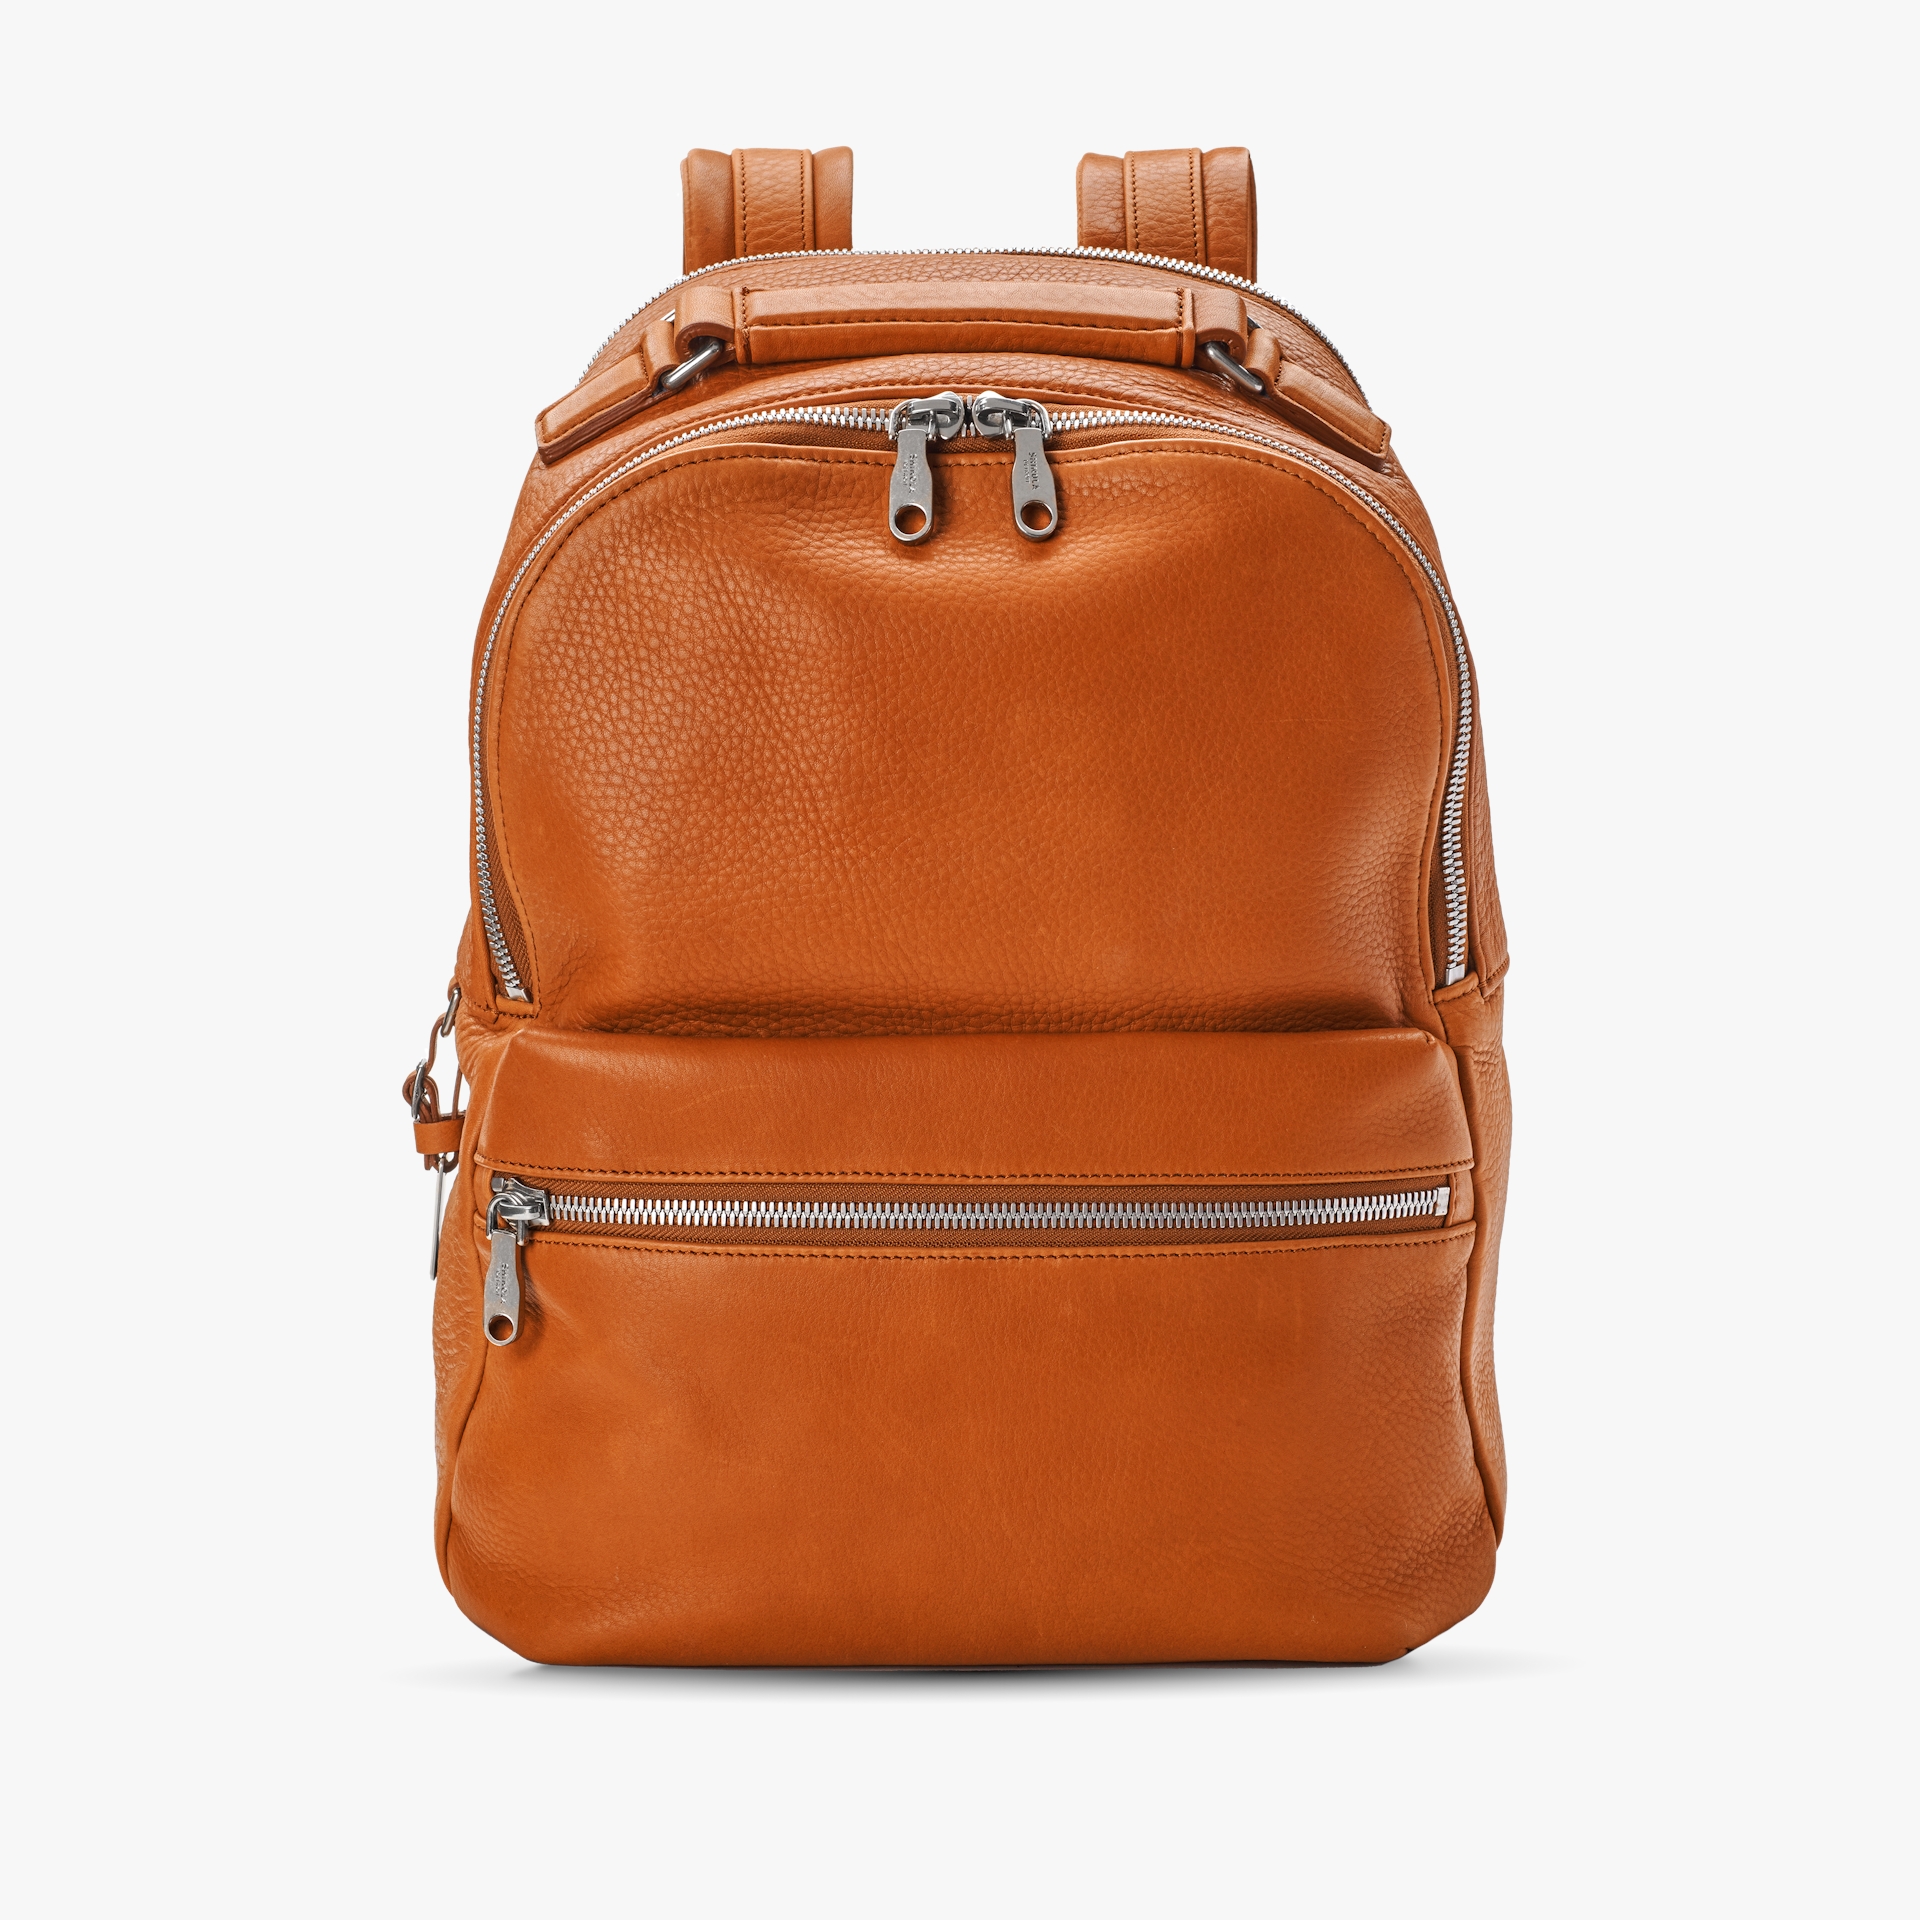 17 - 31 Adjustable Chrome Handbag Stand